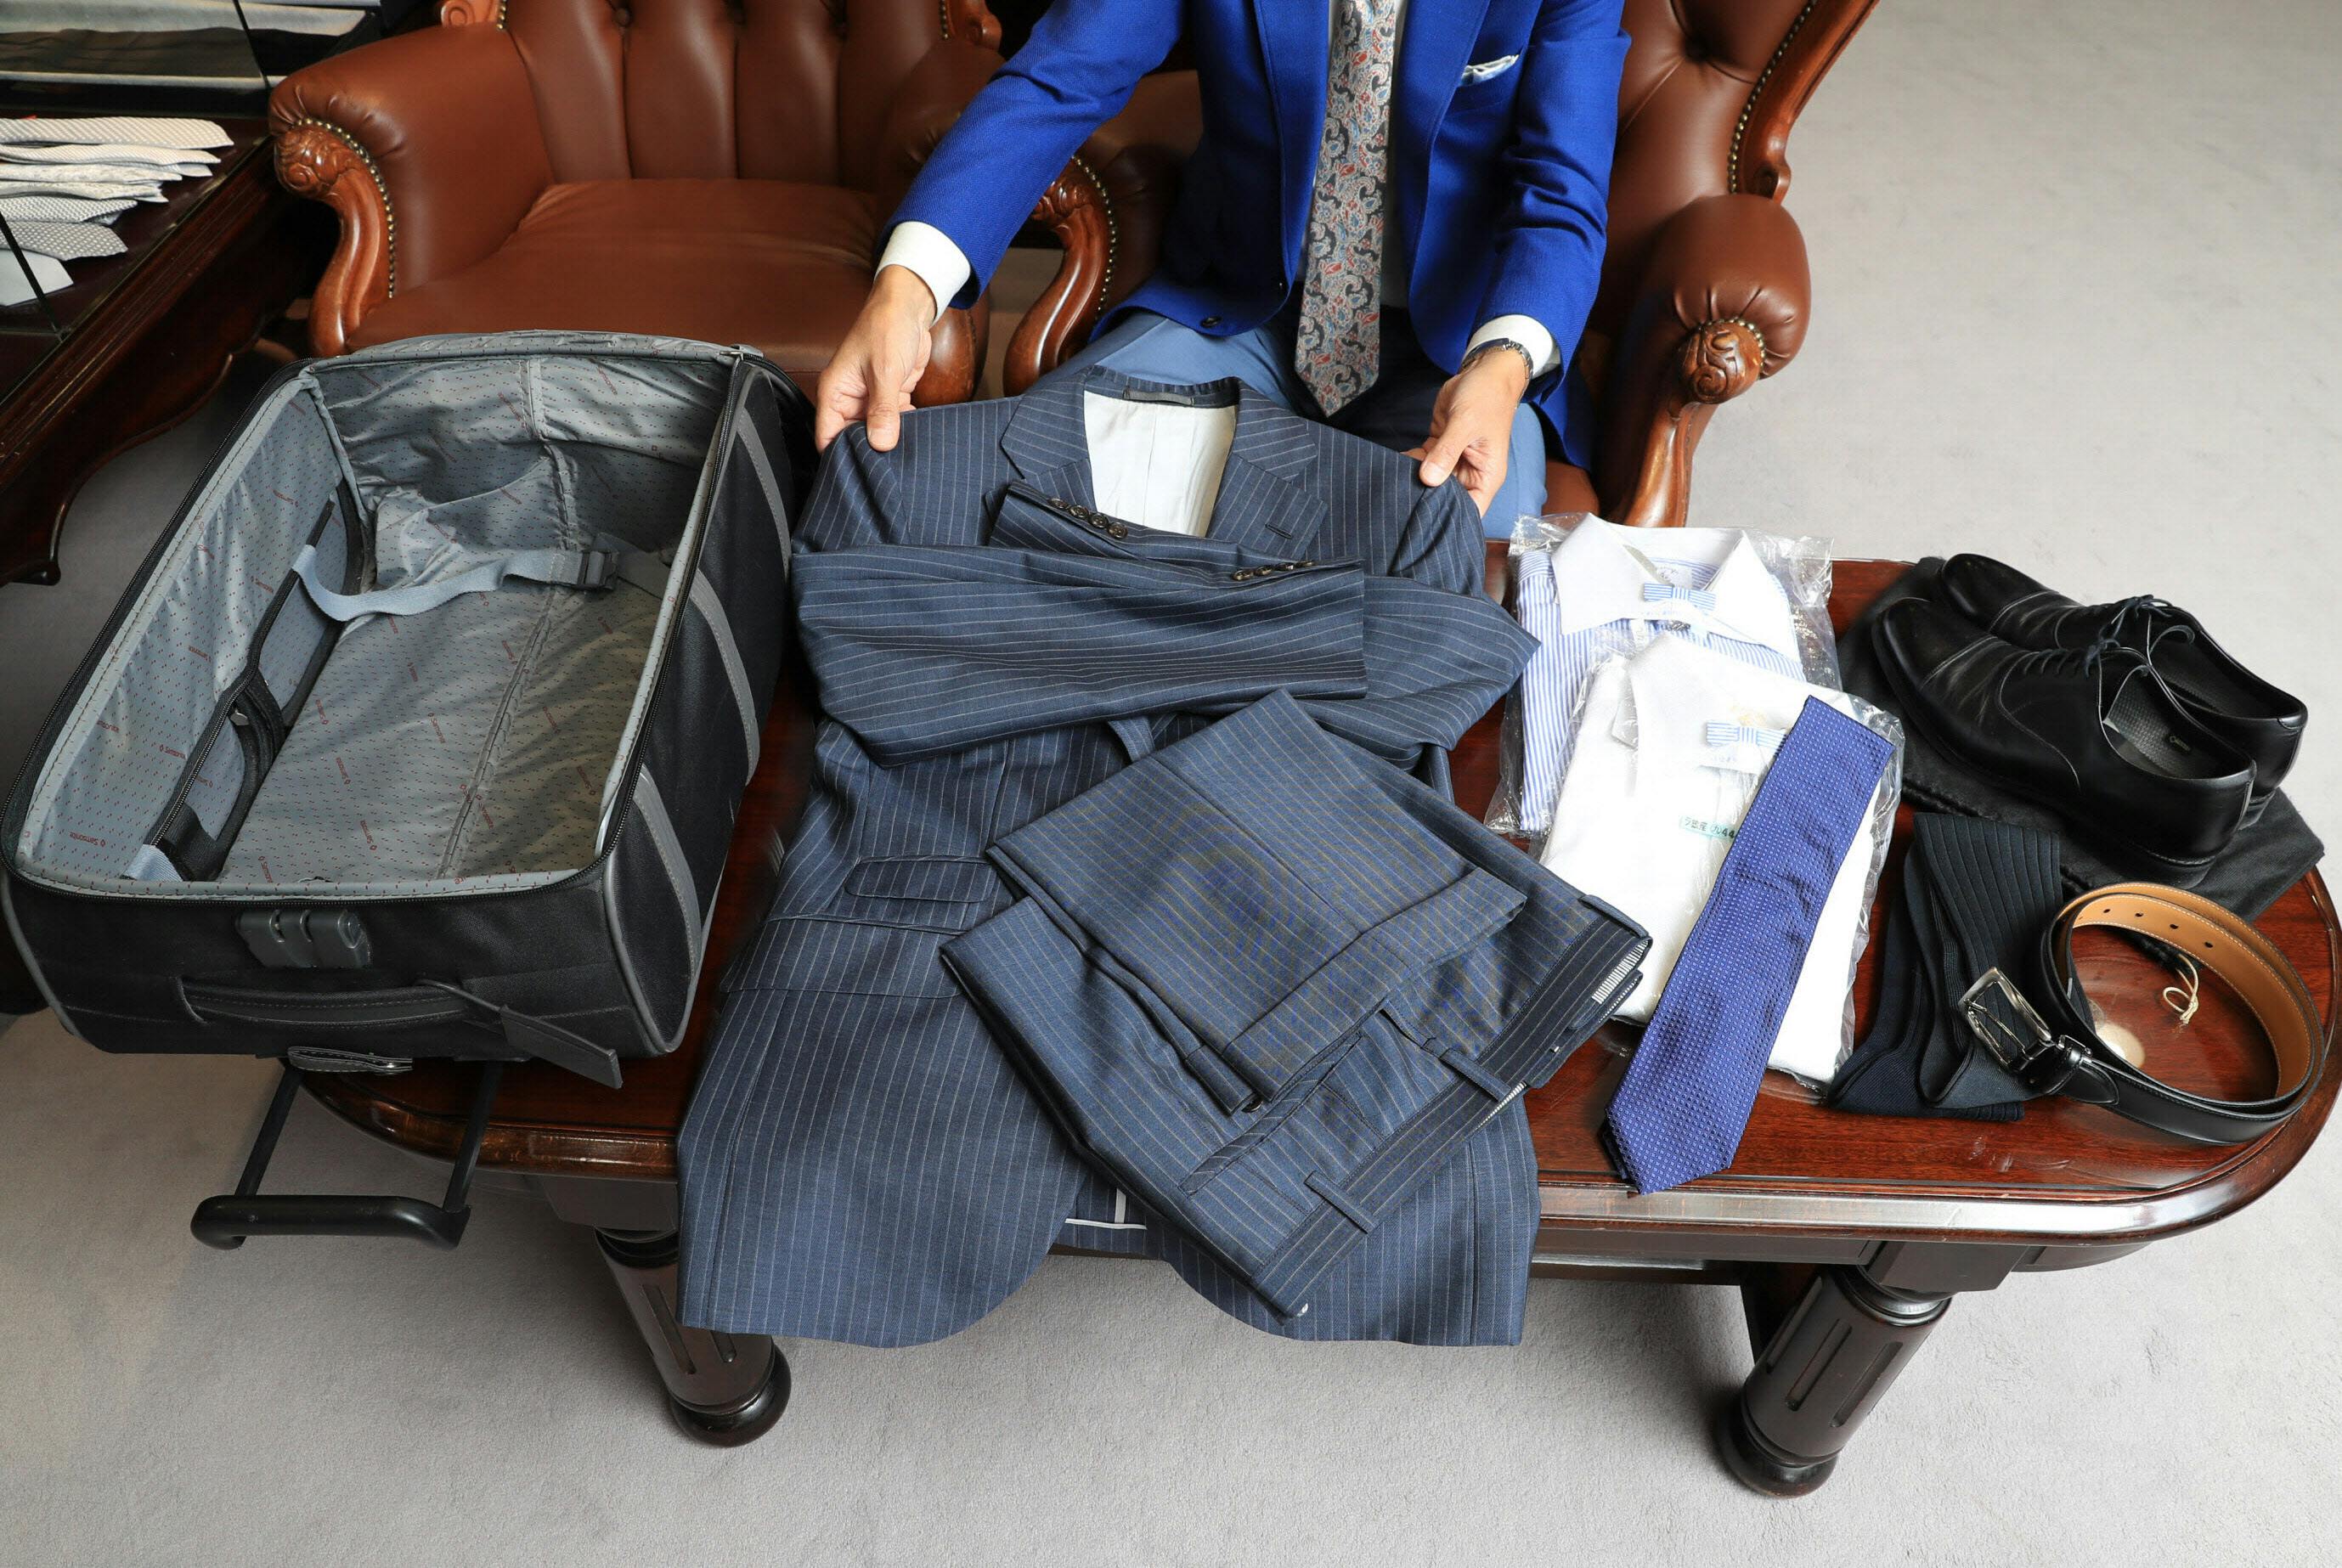 出張 スーツの上手な収納法 クルクル丸めてシワ防ぐ Men S Fashion Nikkei Style